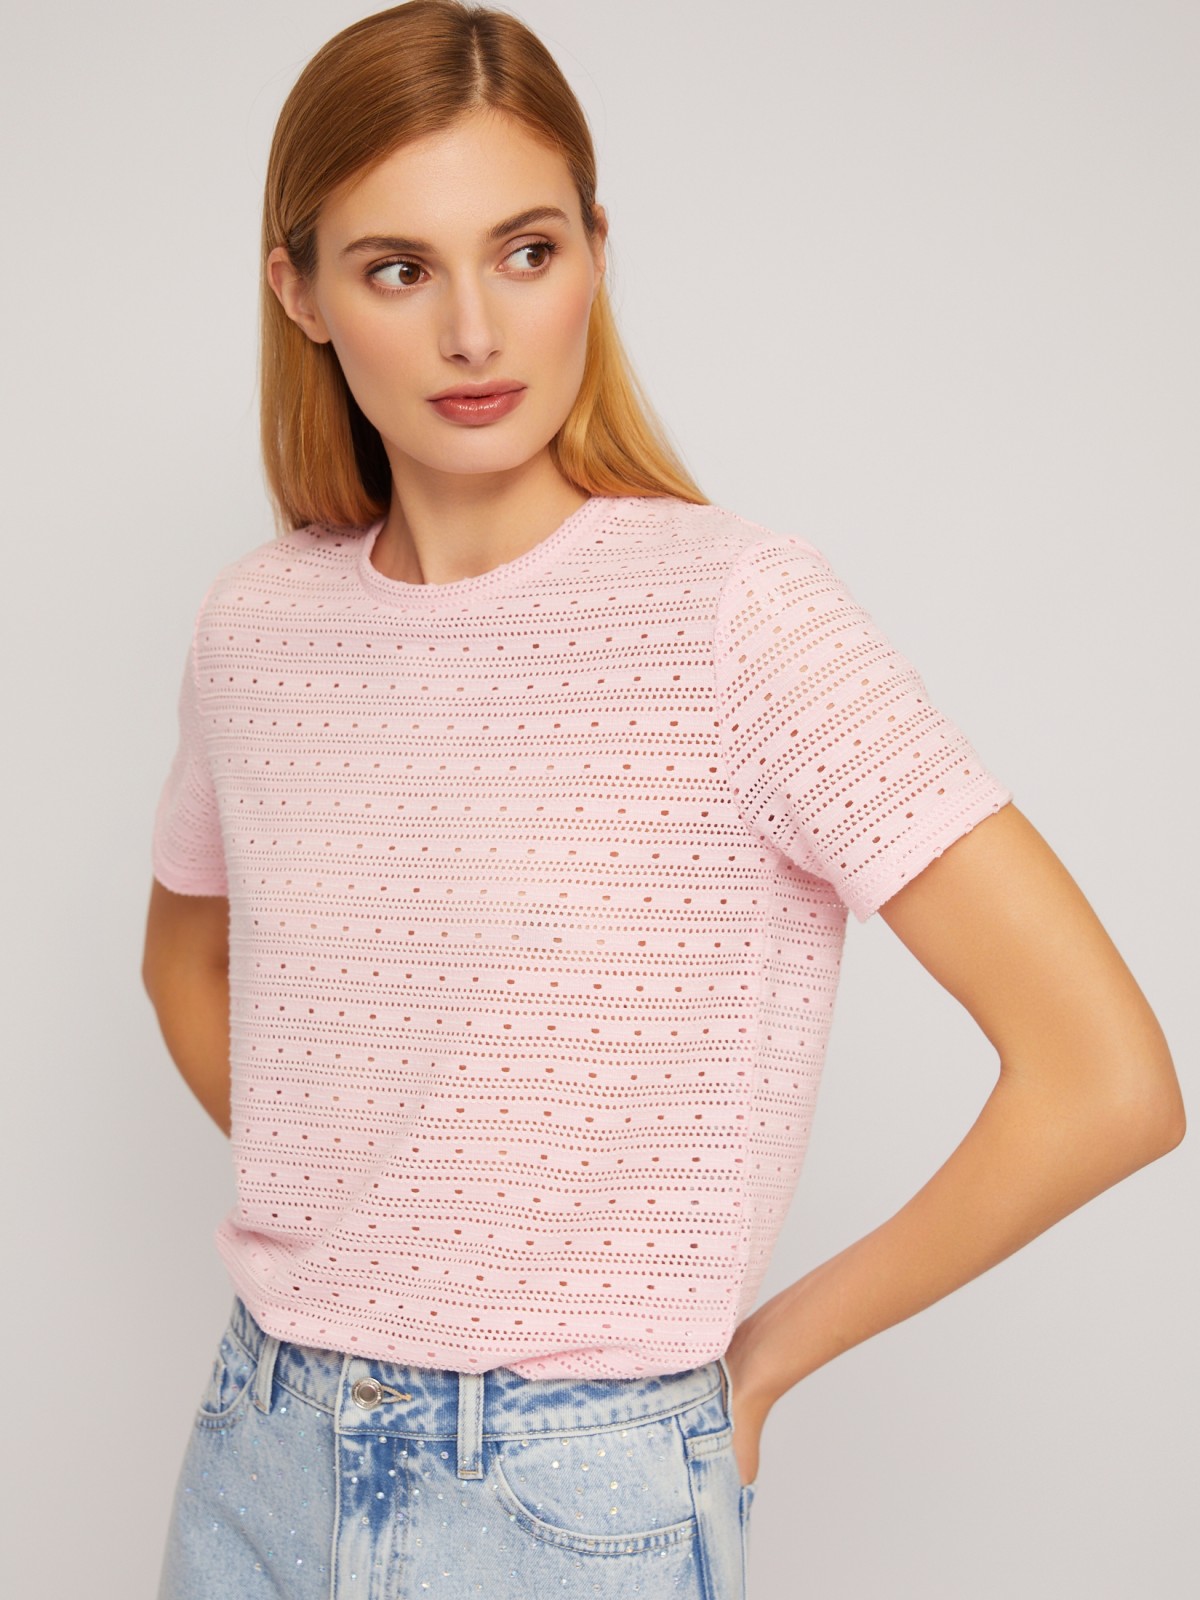 Блузка-футболка из ажурного трикотажа zolla 024233210253, цвет розовый, размер XS